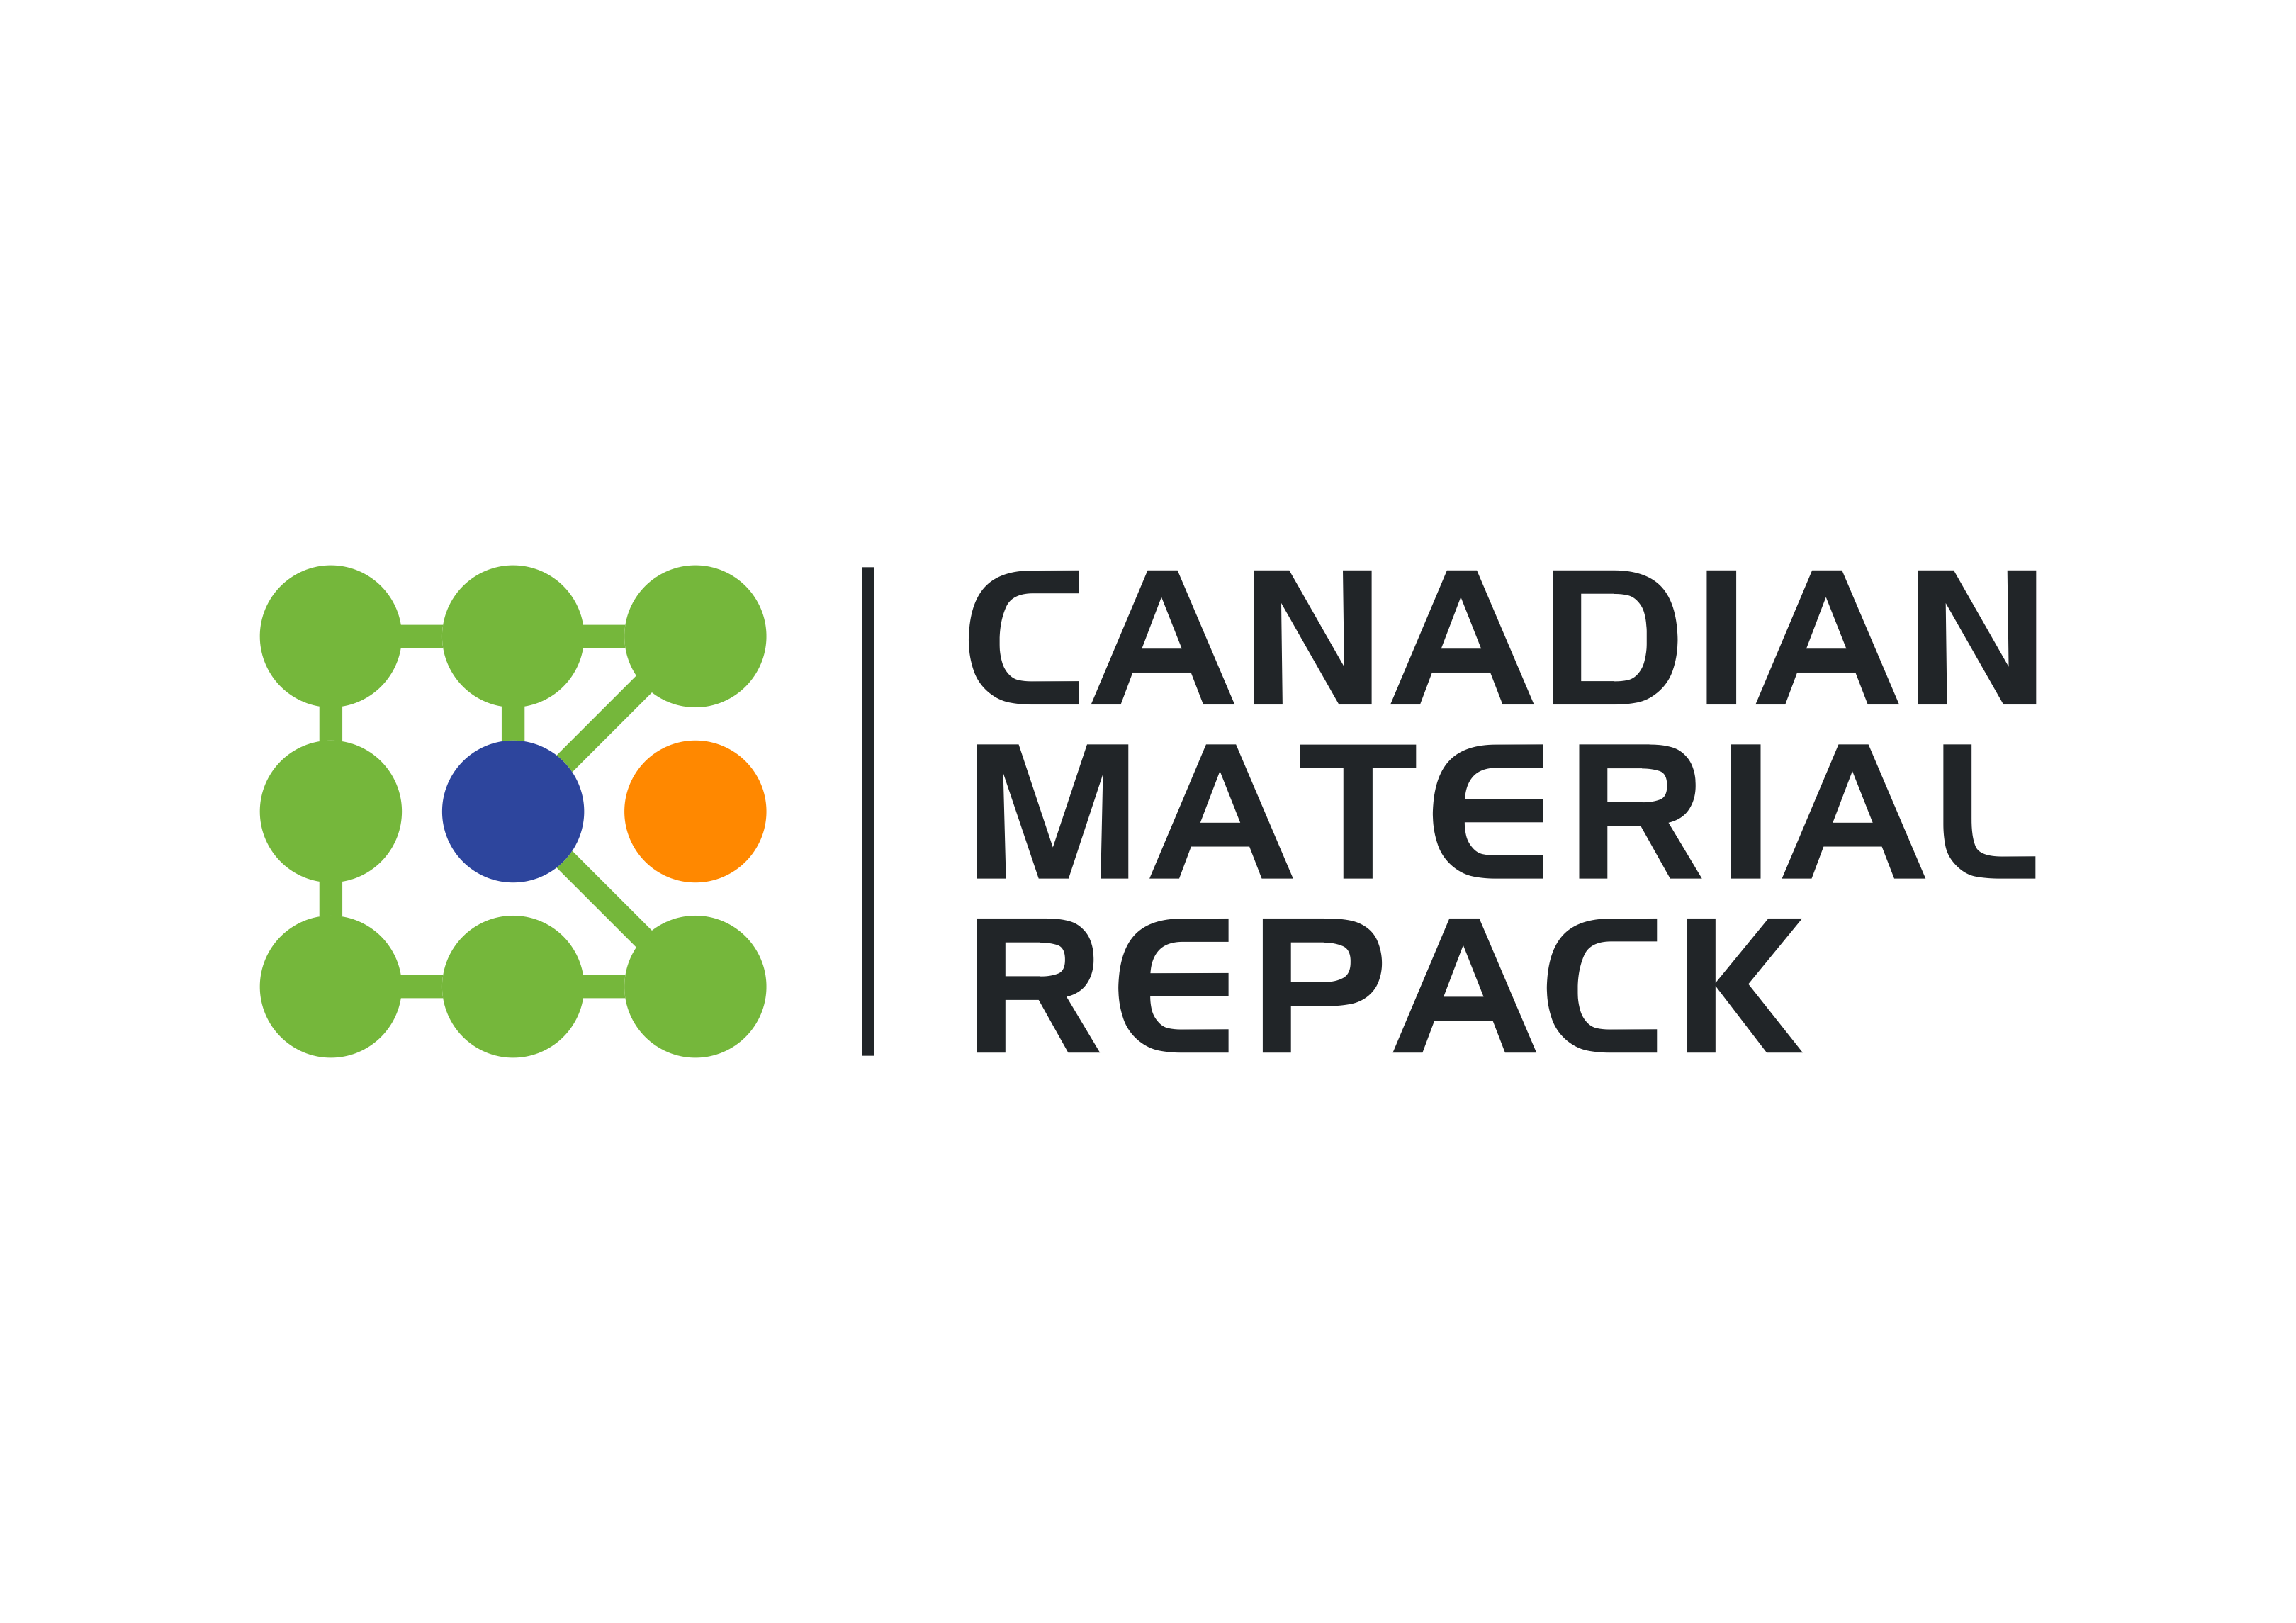 CANADIAN MATERIAL REPACK LOGO (003)